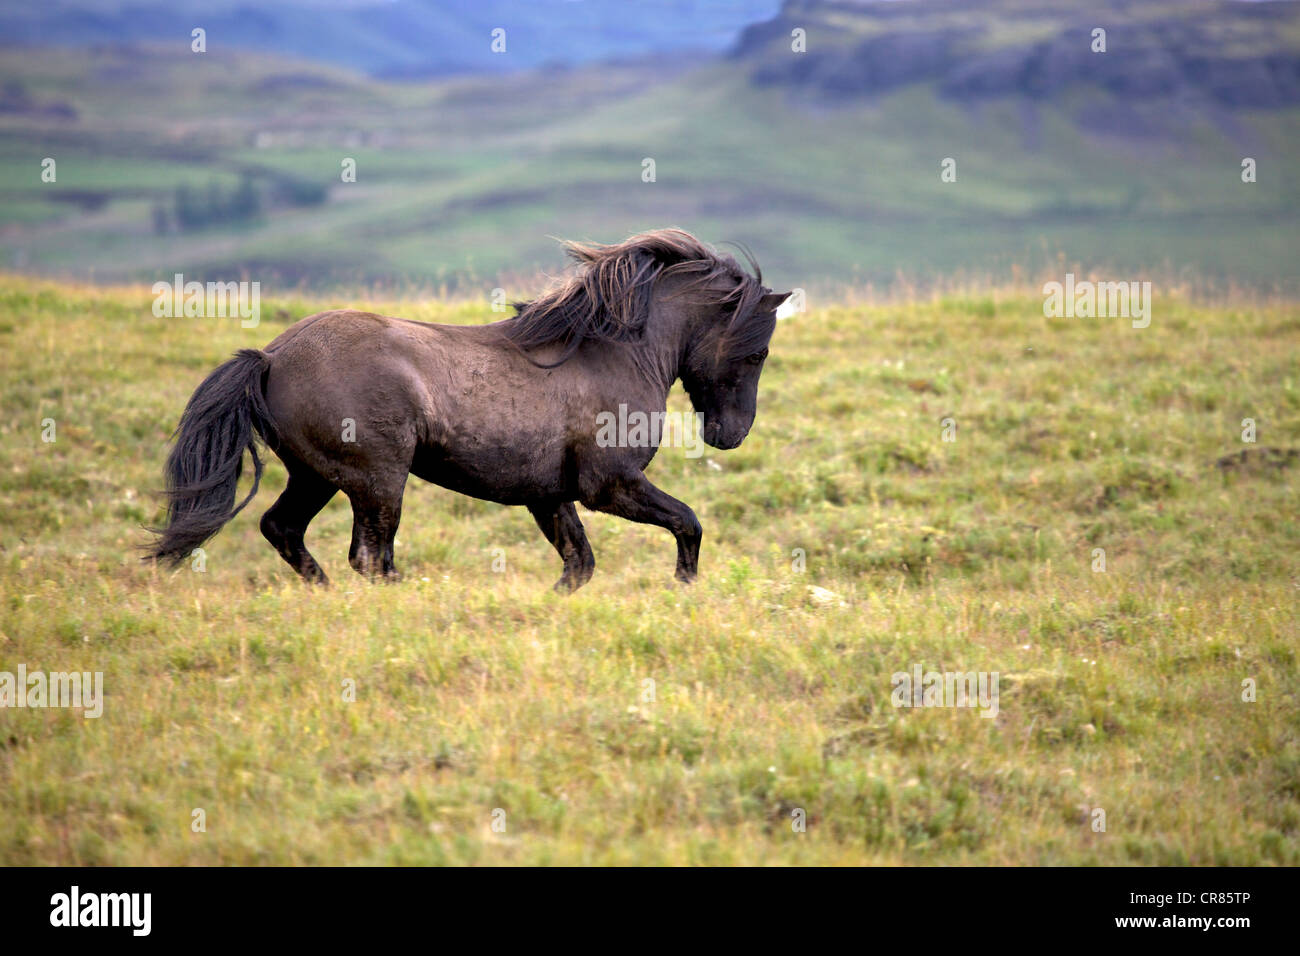 Iceland horse, Iceland, Europe Stock Photo